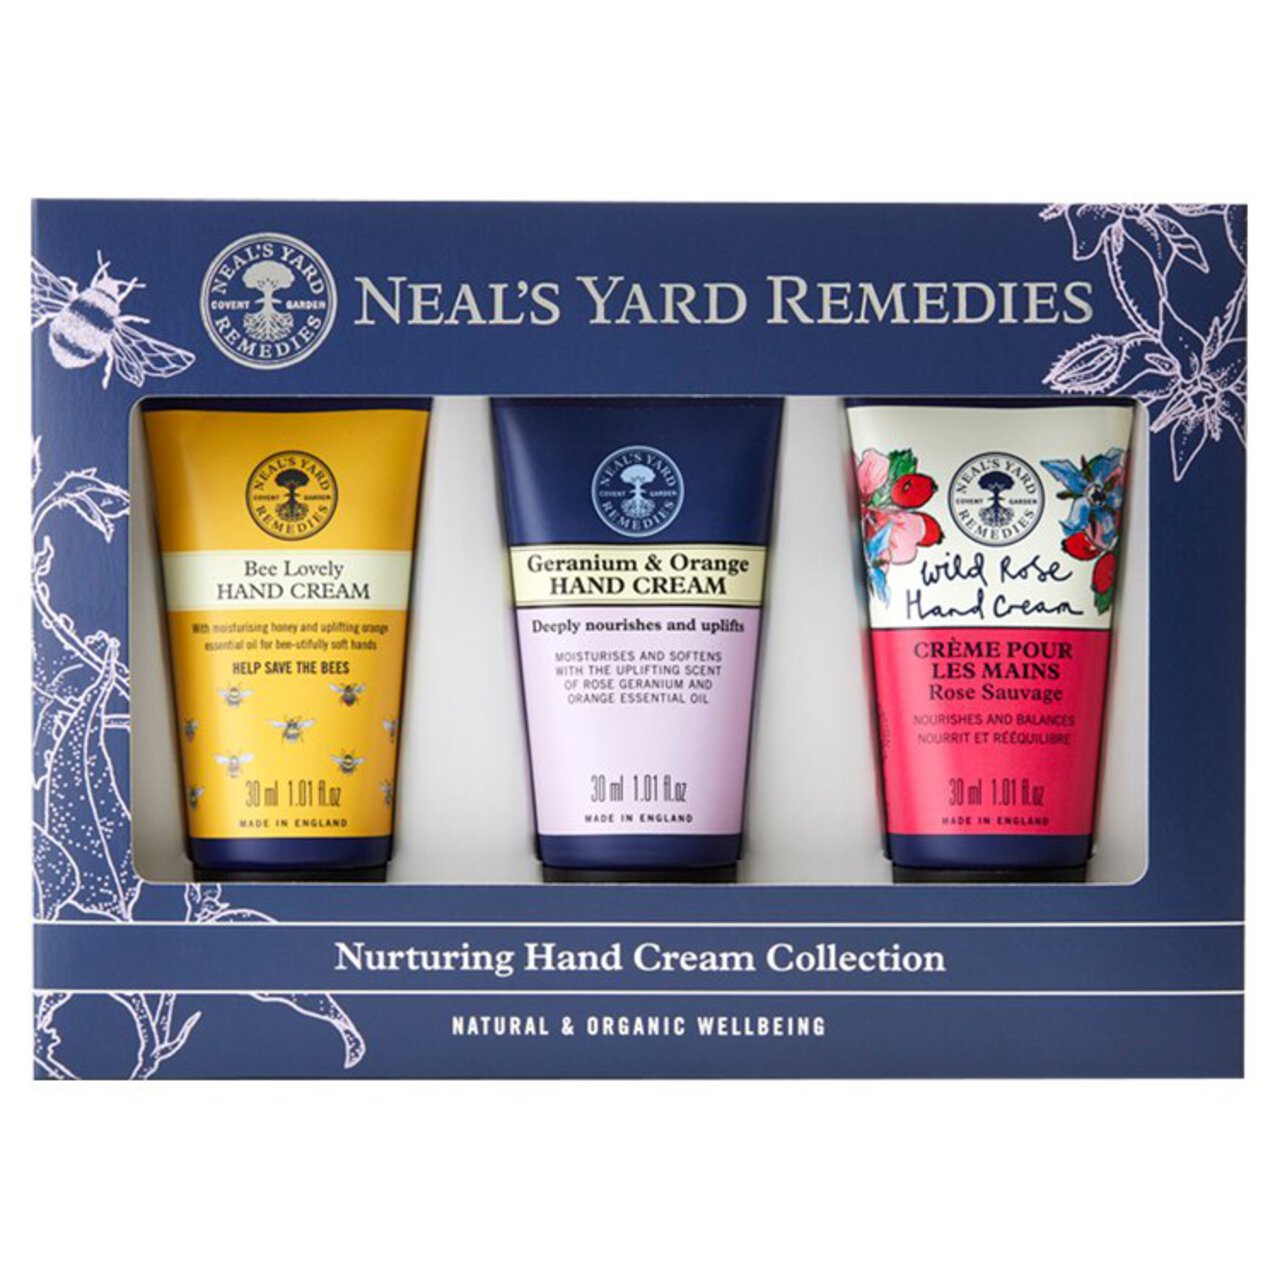 Neal's Yard Nurturing Hand Cream Collection